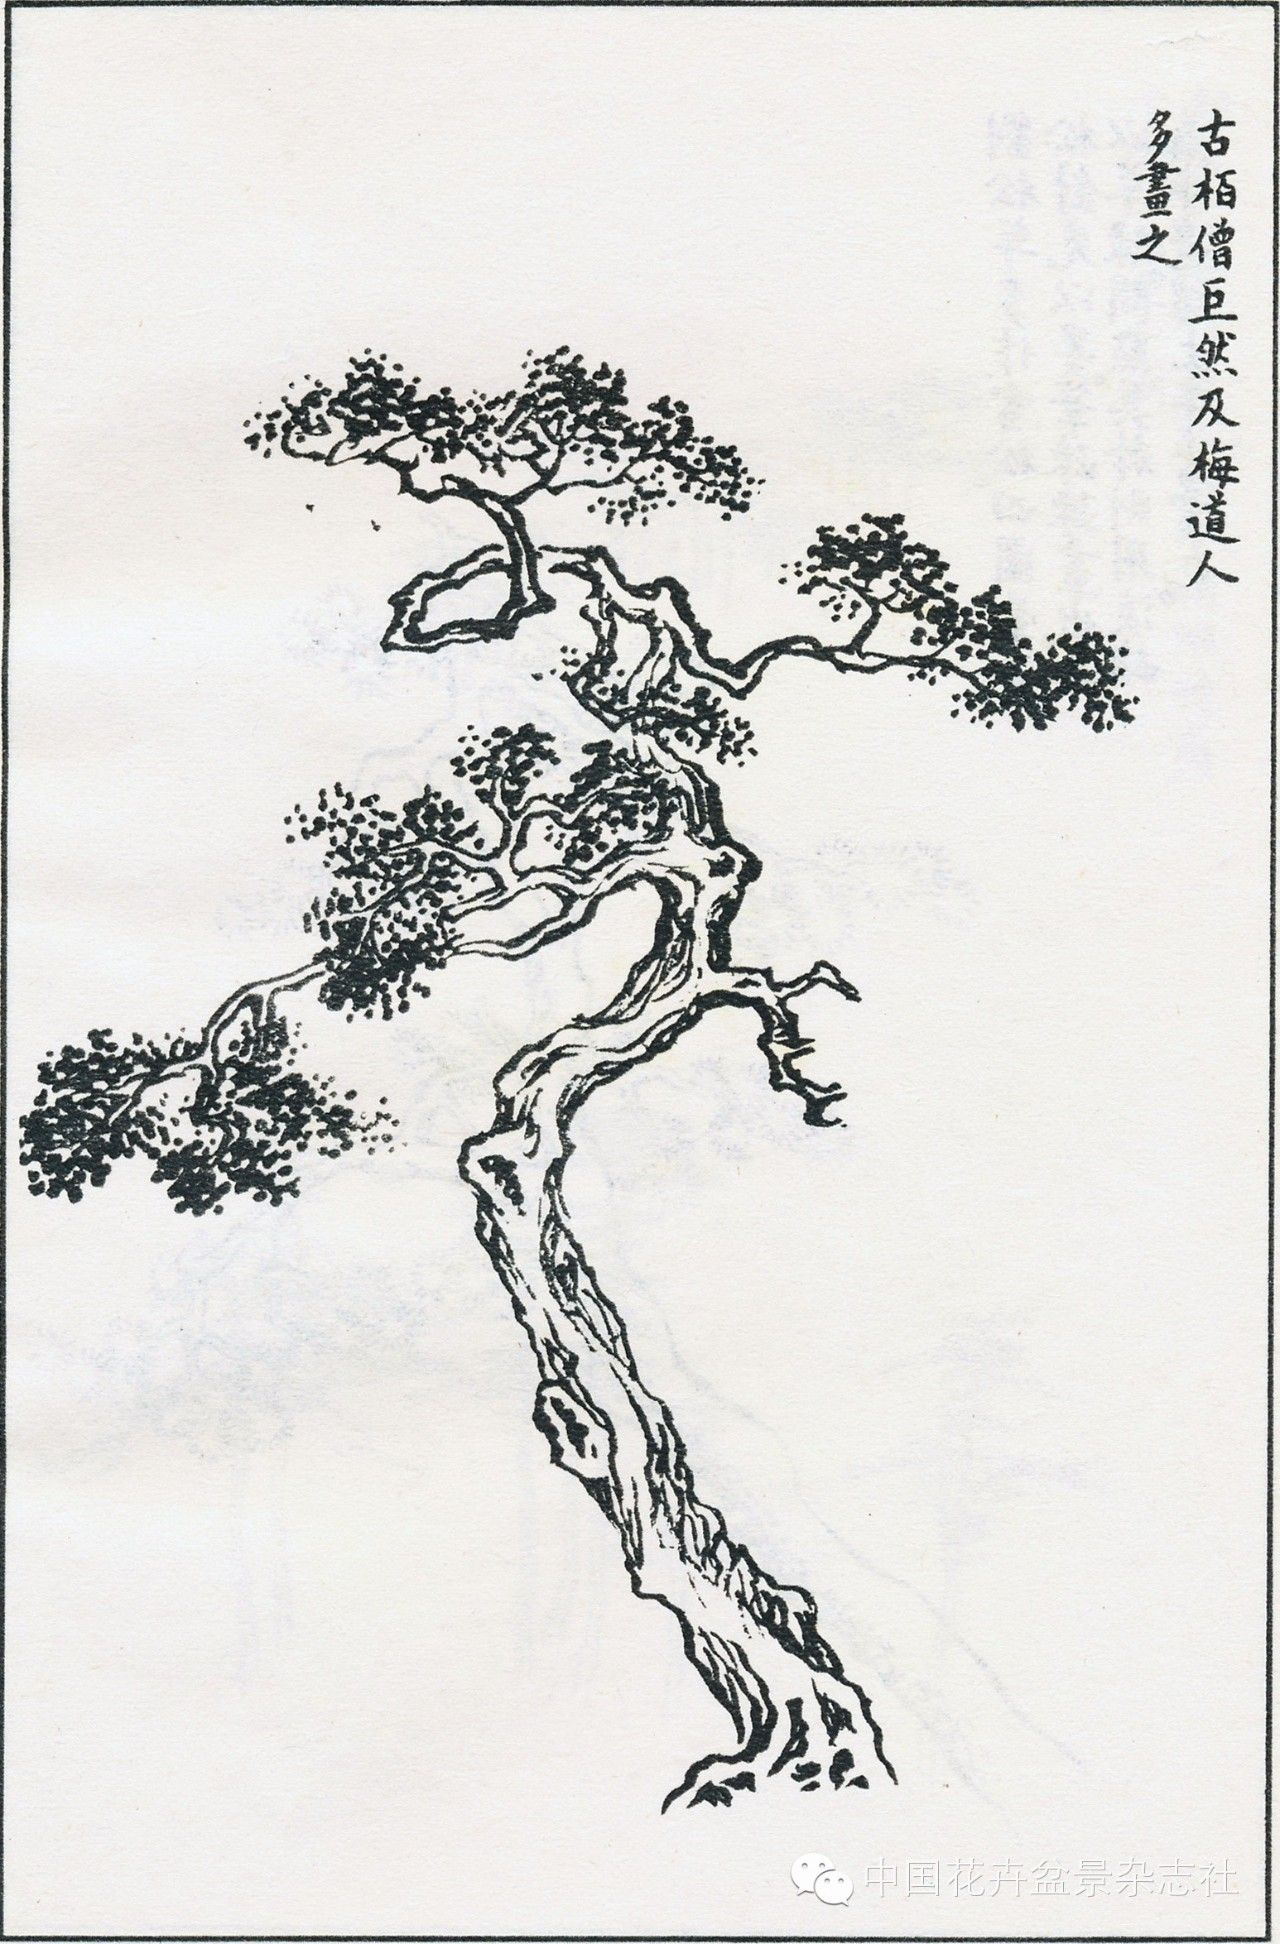 图11 《芥子园画传》中的柏树